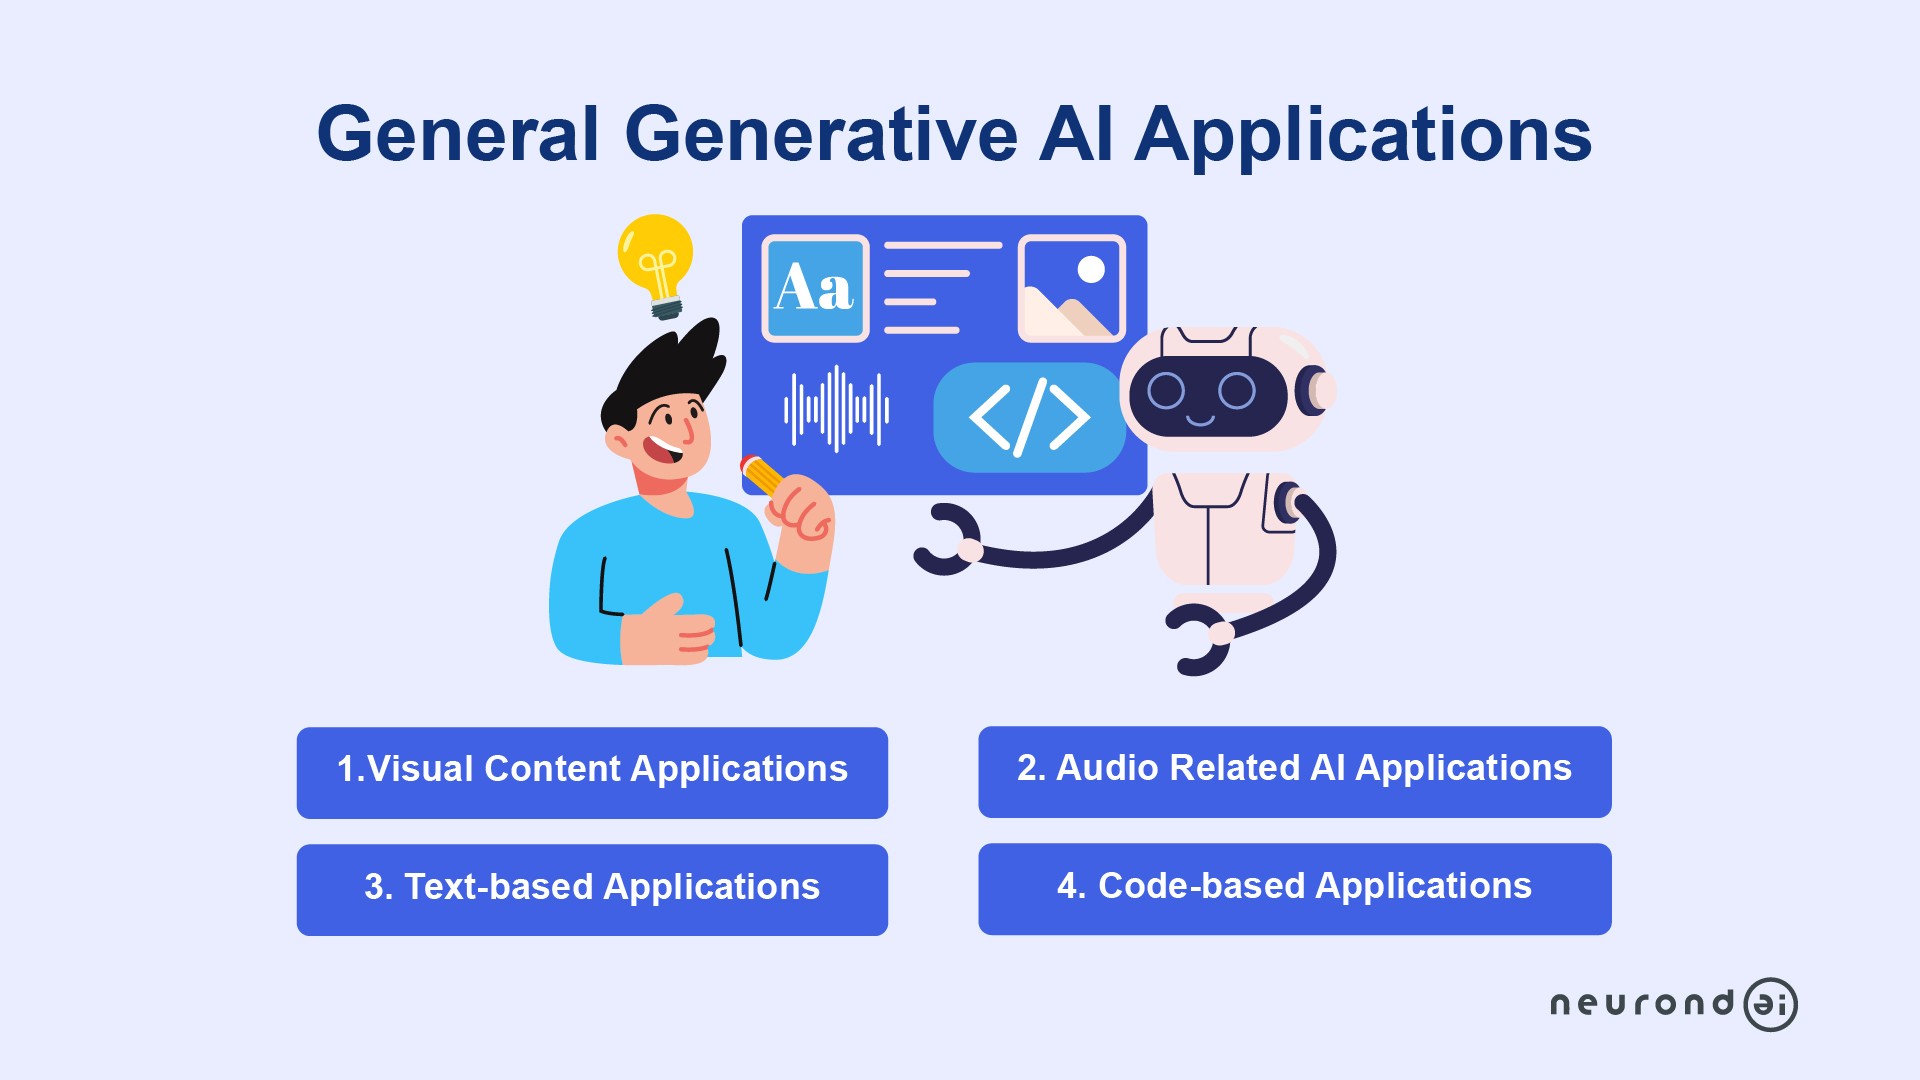 General Generative AI Applications